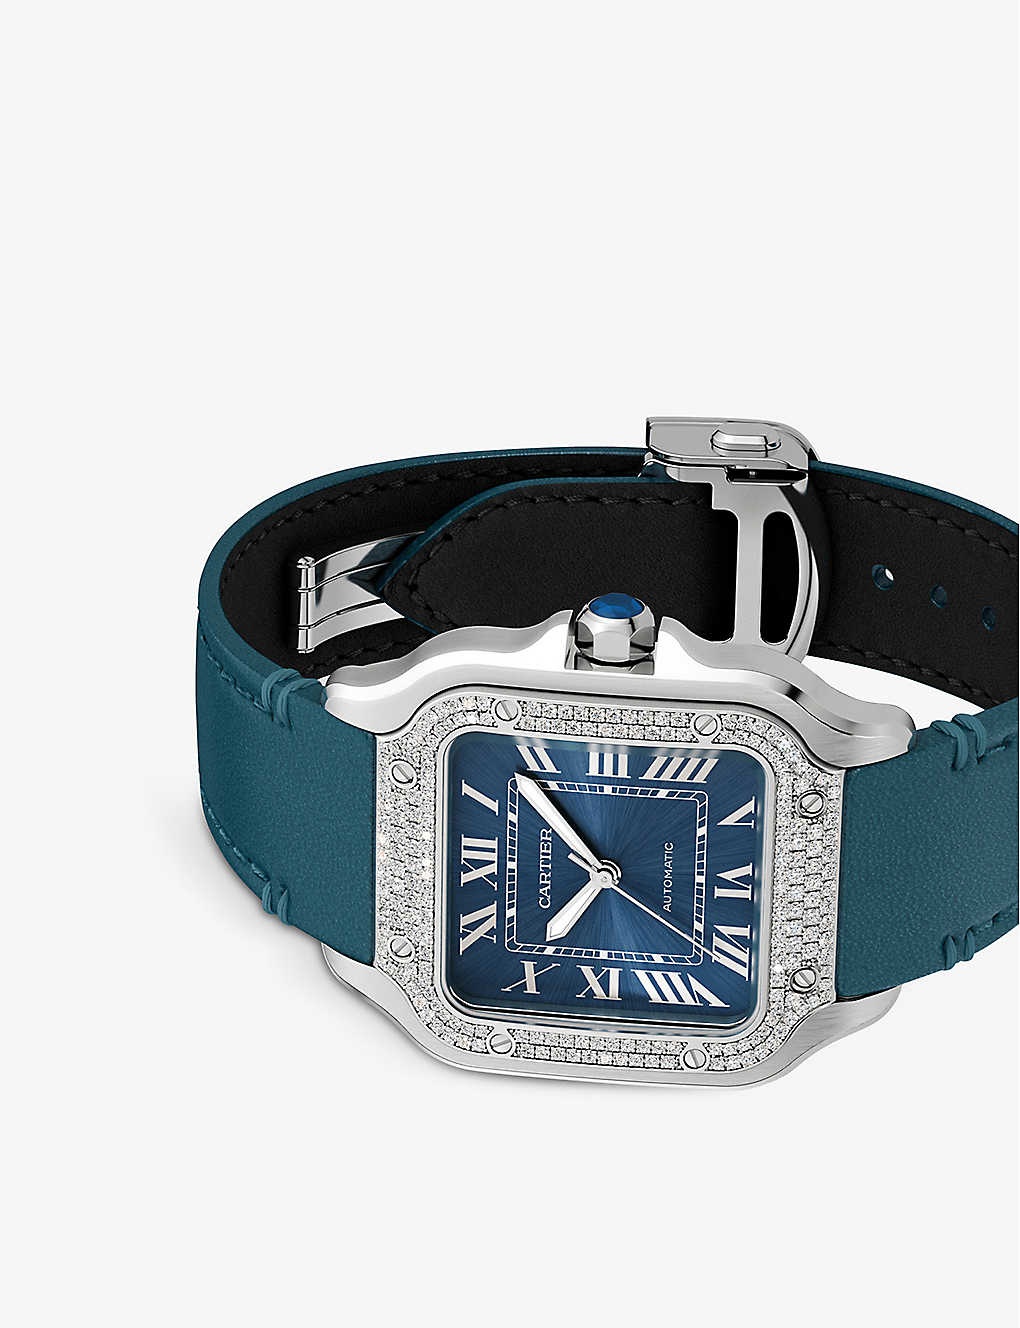 Santos de Cartier mechanical watch - 2